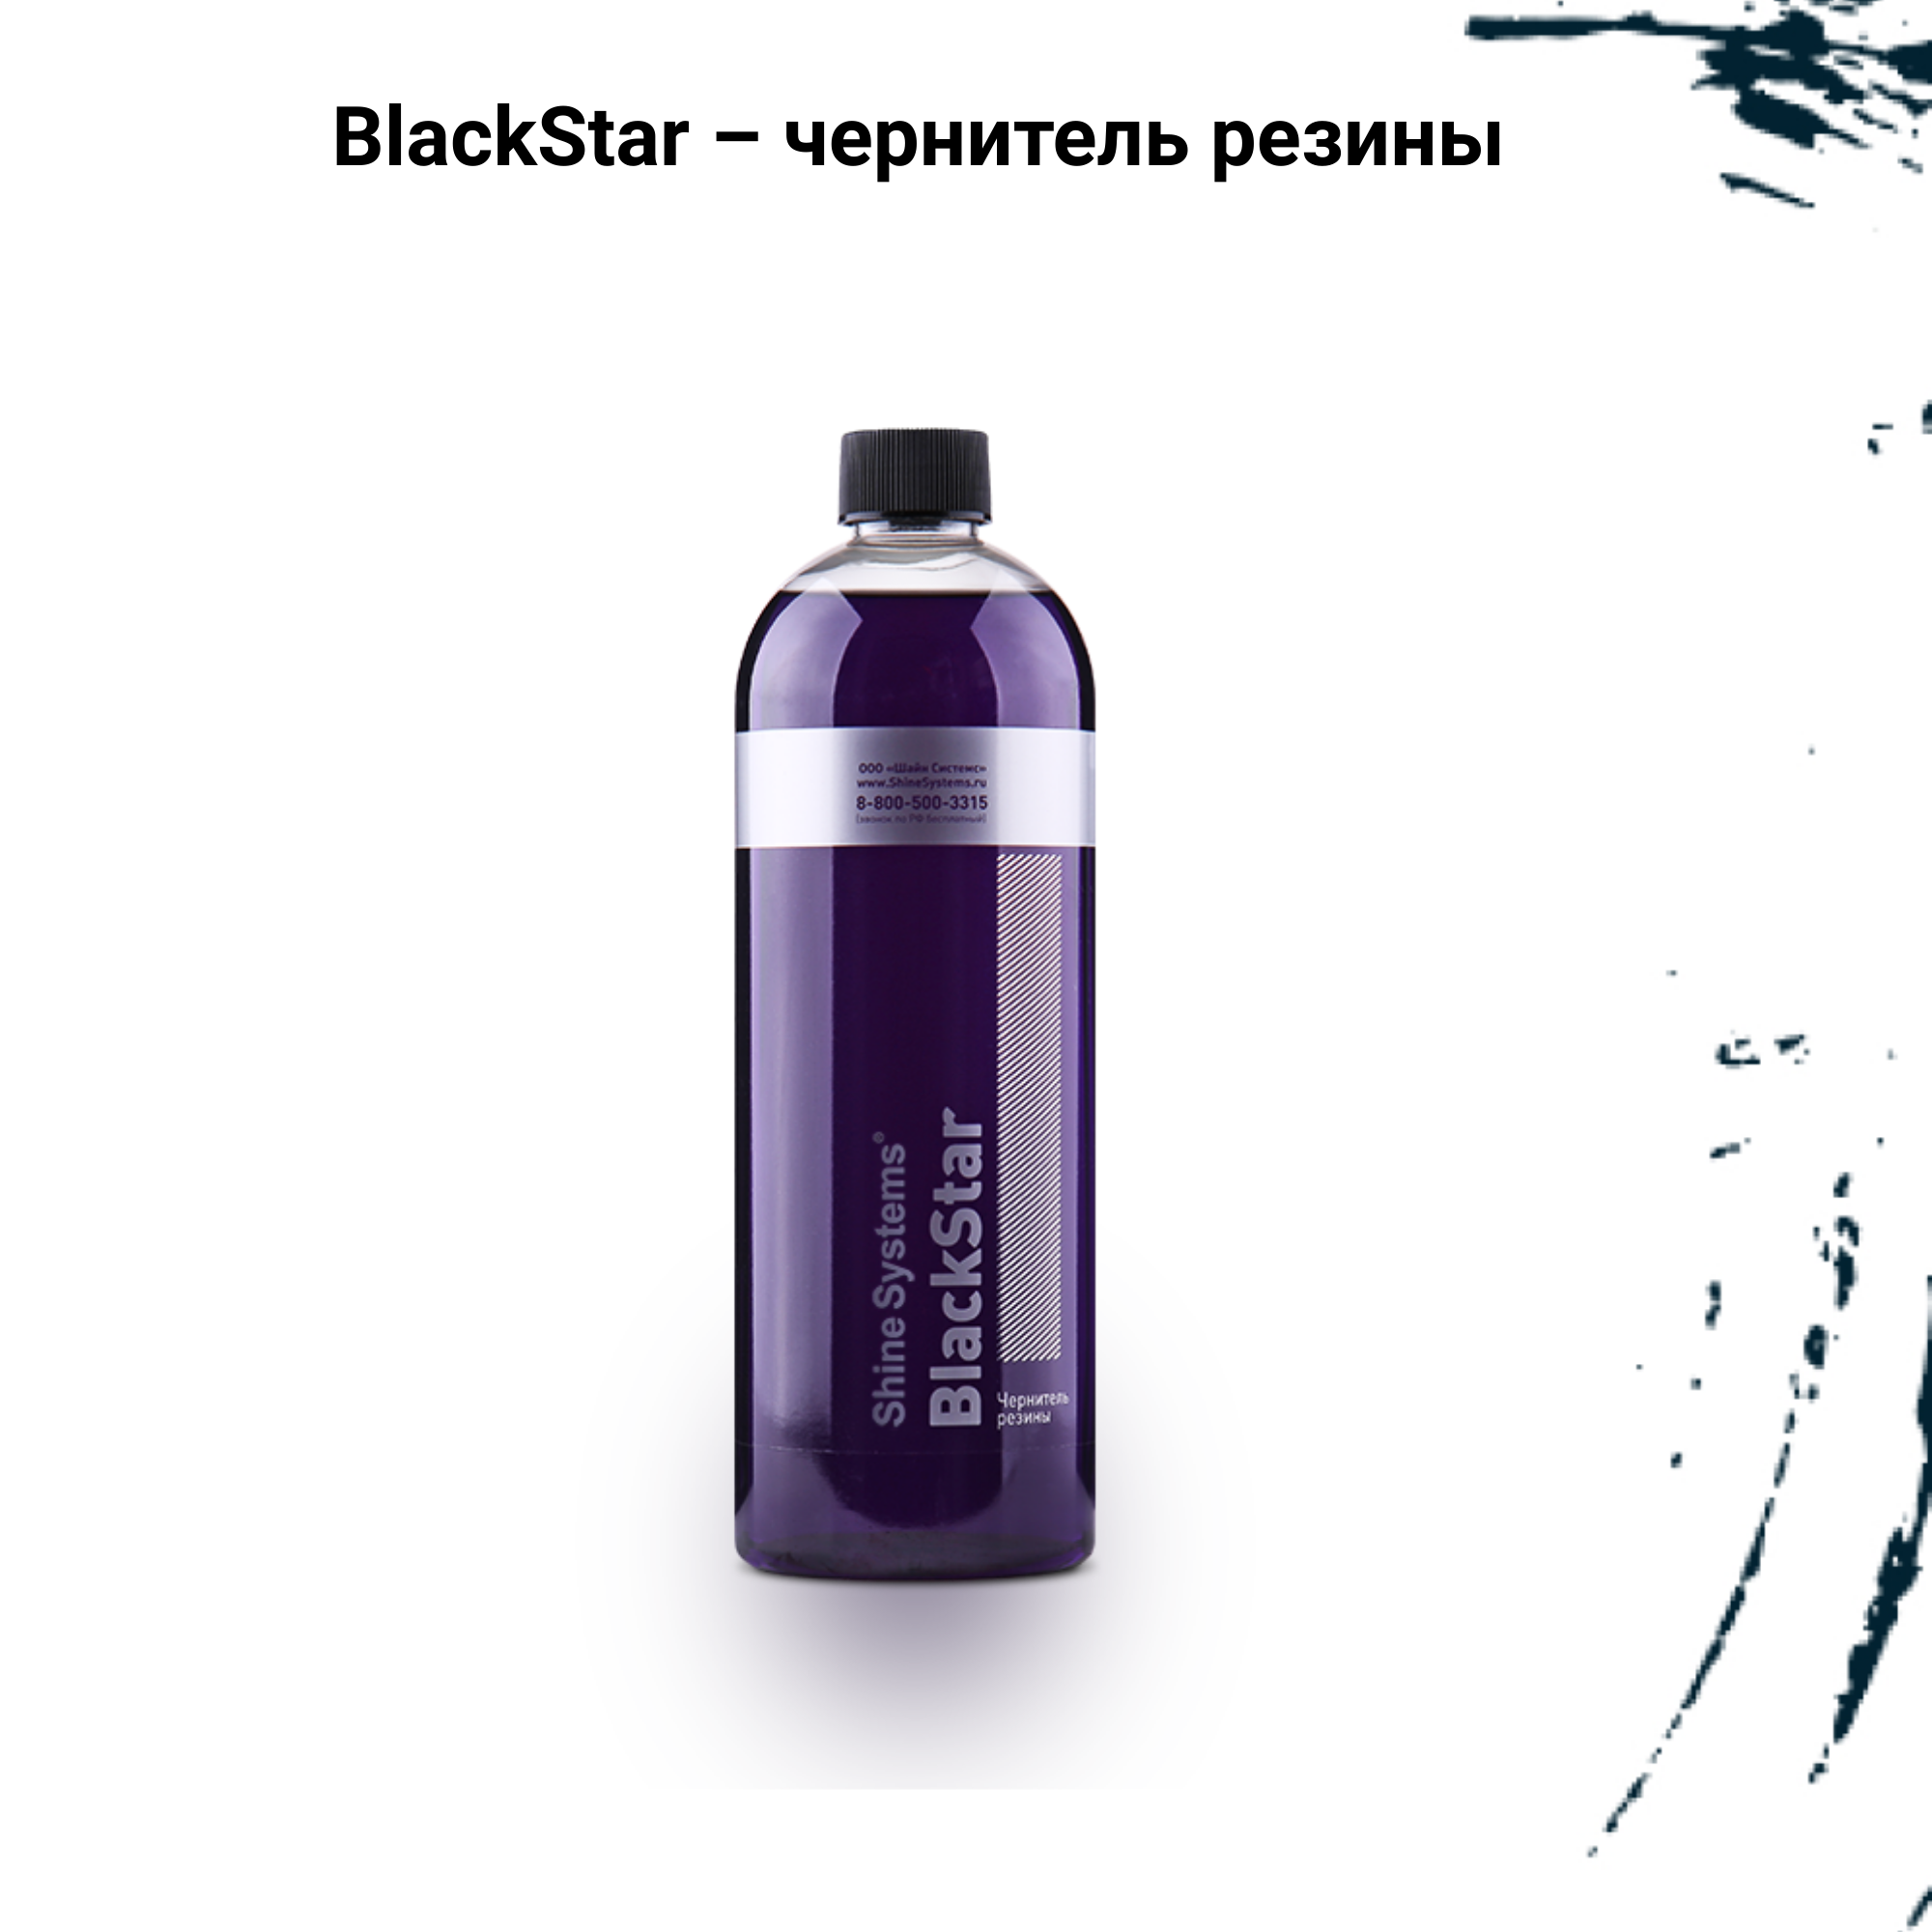 BlackStar чернитель резины